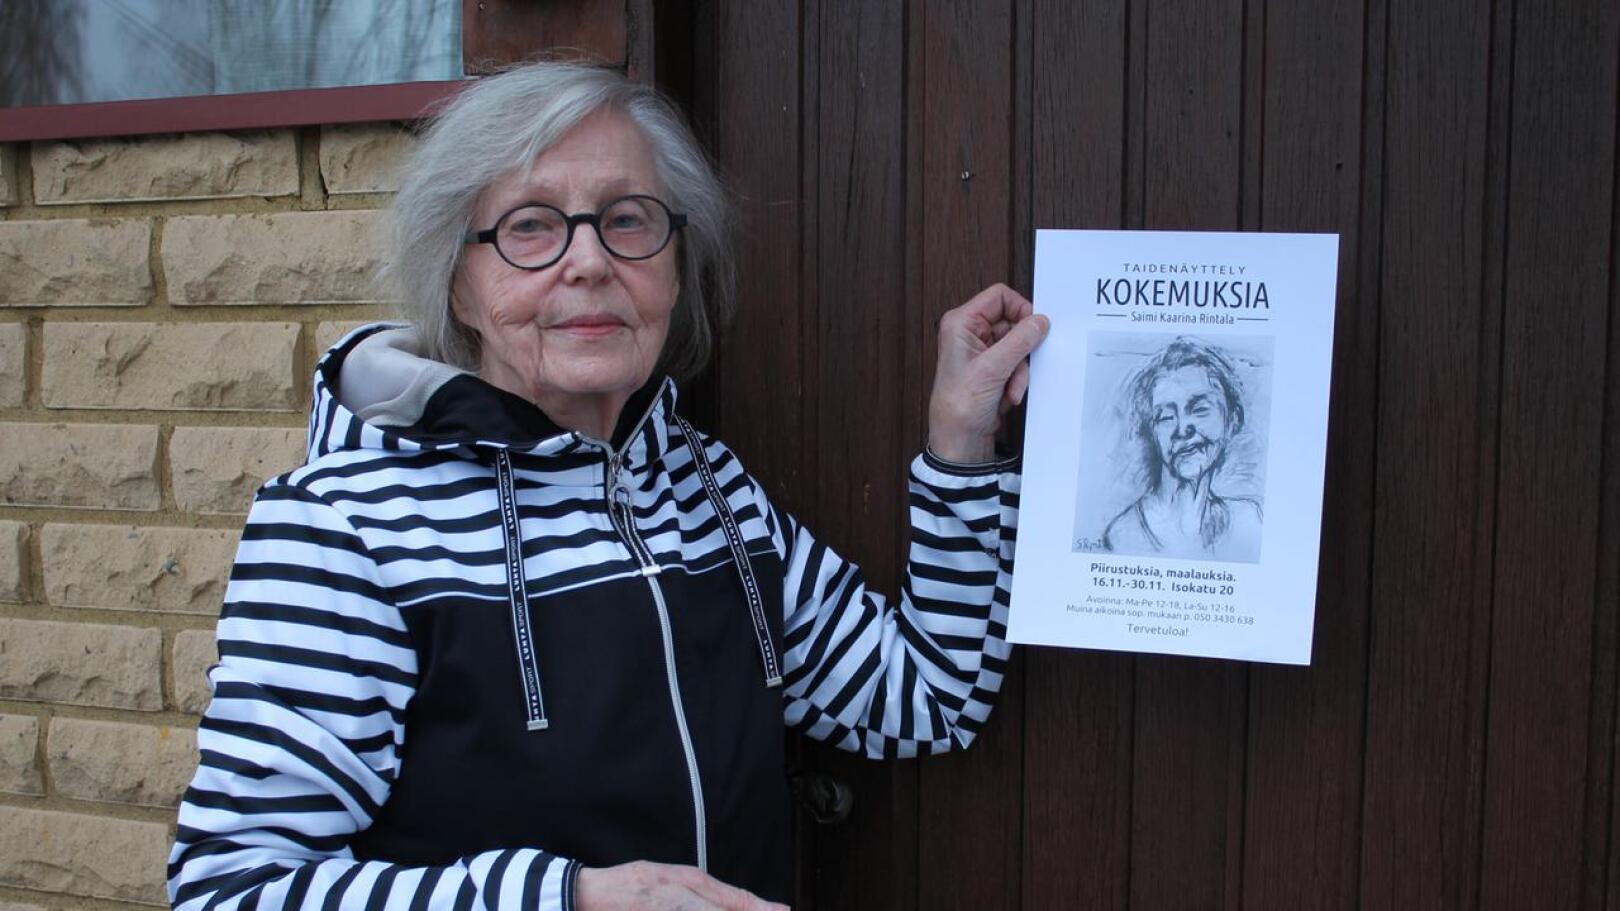 Oulun taiteilijaseuraan kuuluvan Rintalan teoksia on ollut esillä lukuisissa näyttelyissä vuosien varrella ympäri maata. Viimeksi niitä on ollut Oulun aluetaidemuseon kiertonäyttelyssä vuosina 2020- 2021. Näyttely ei valitettavasti kiertänyt Haapajärven kautta.